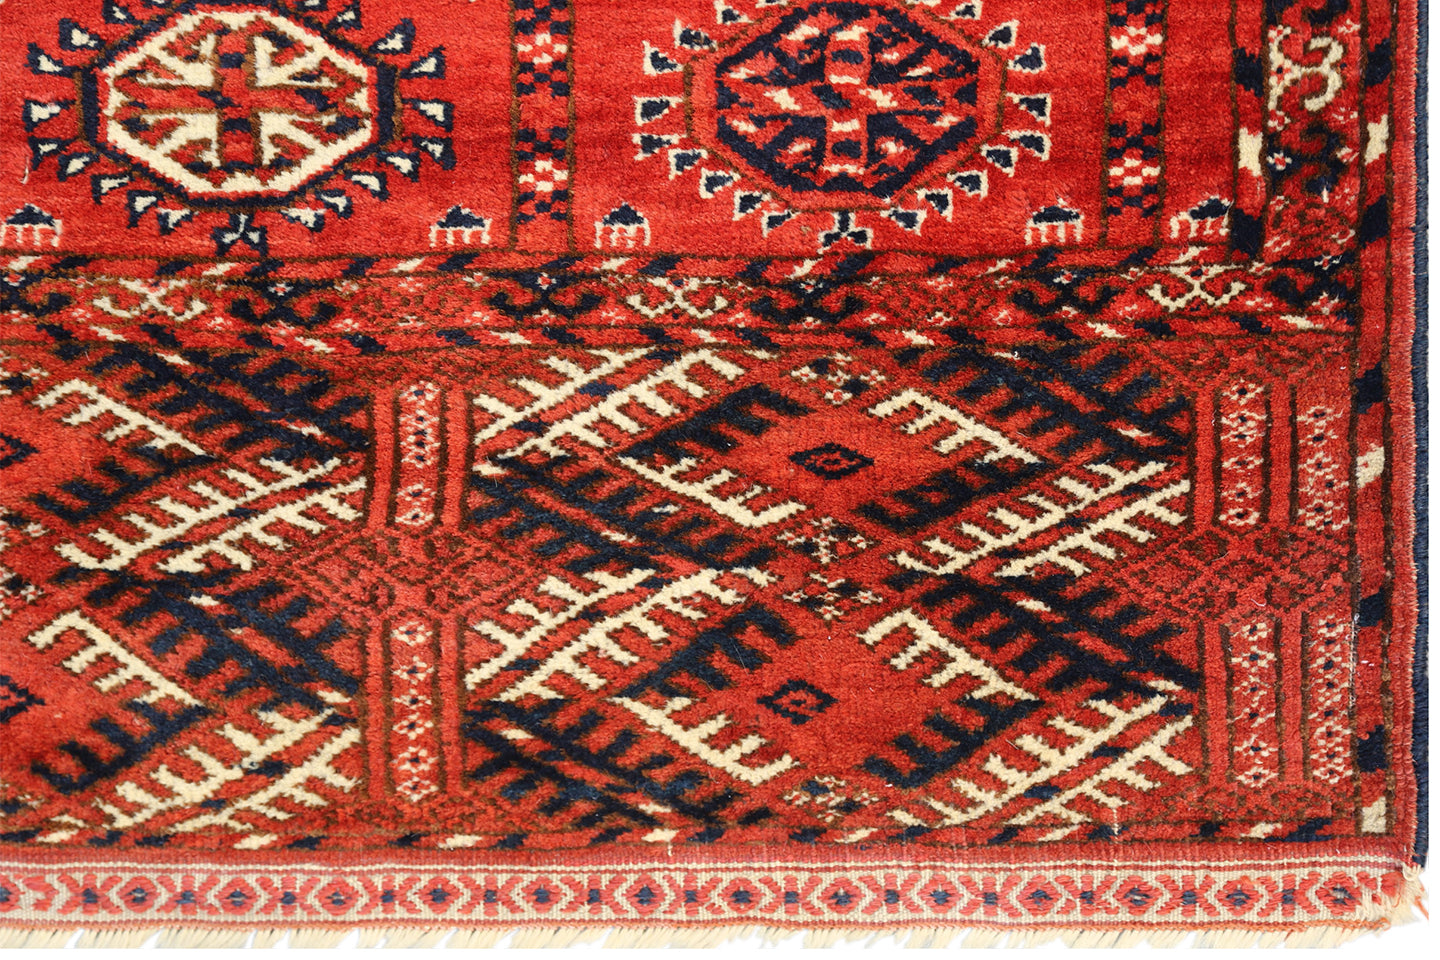 7'x9' Antique Turkman Rug